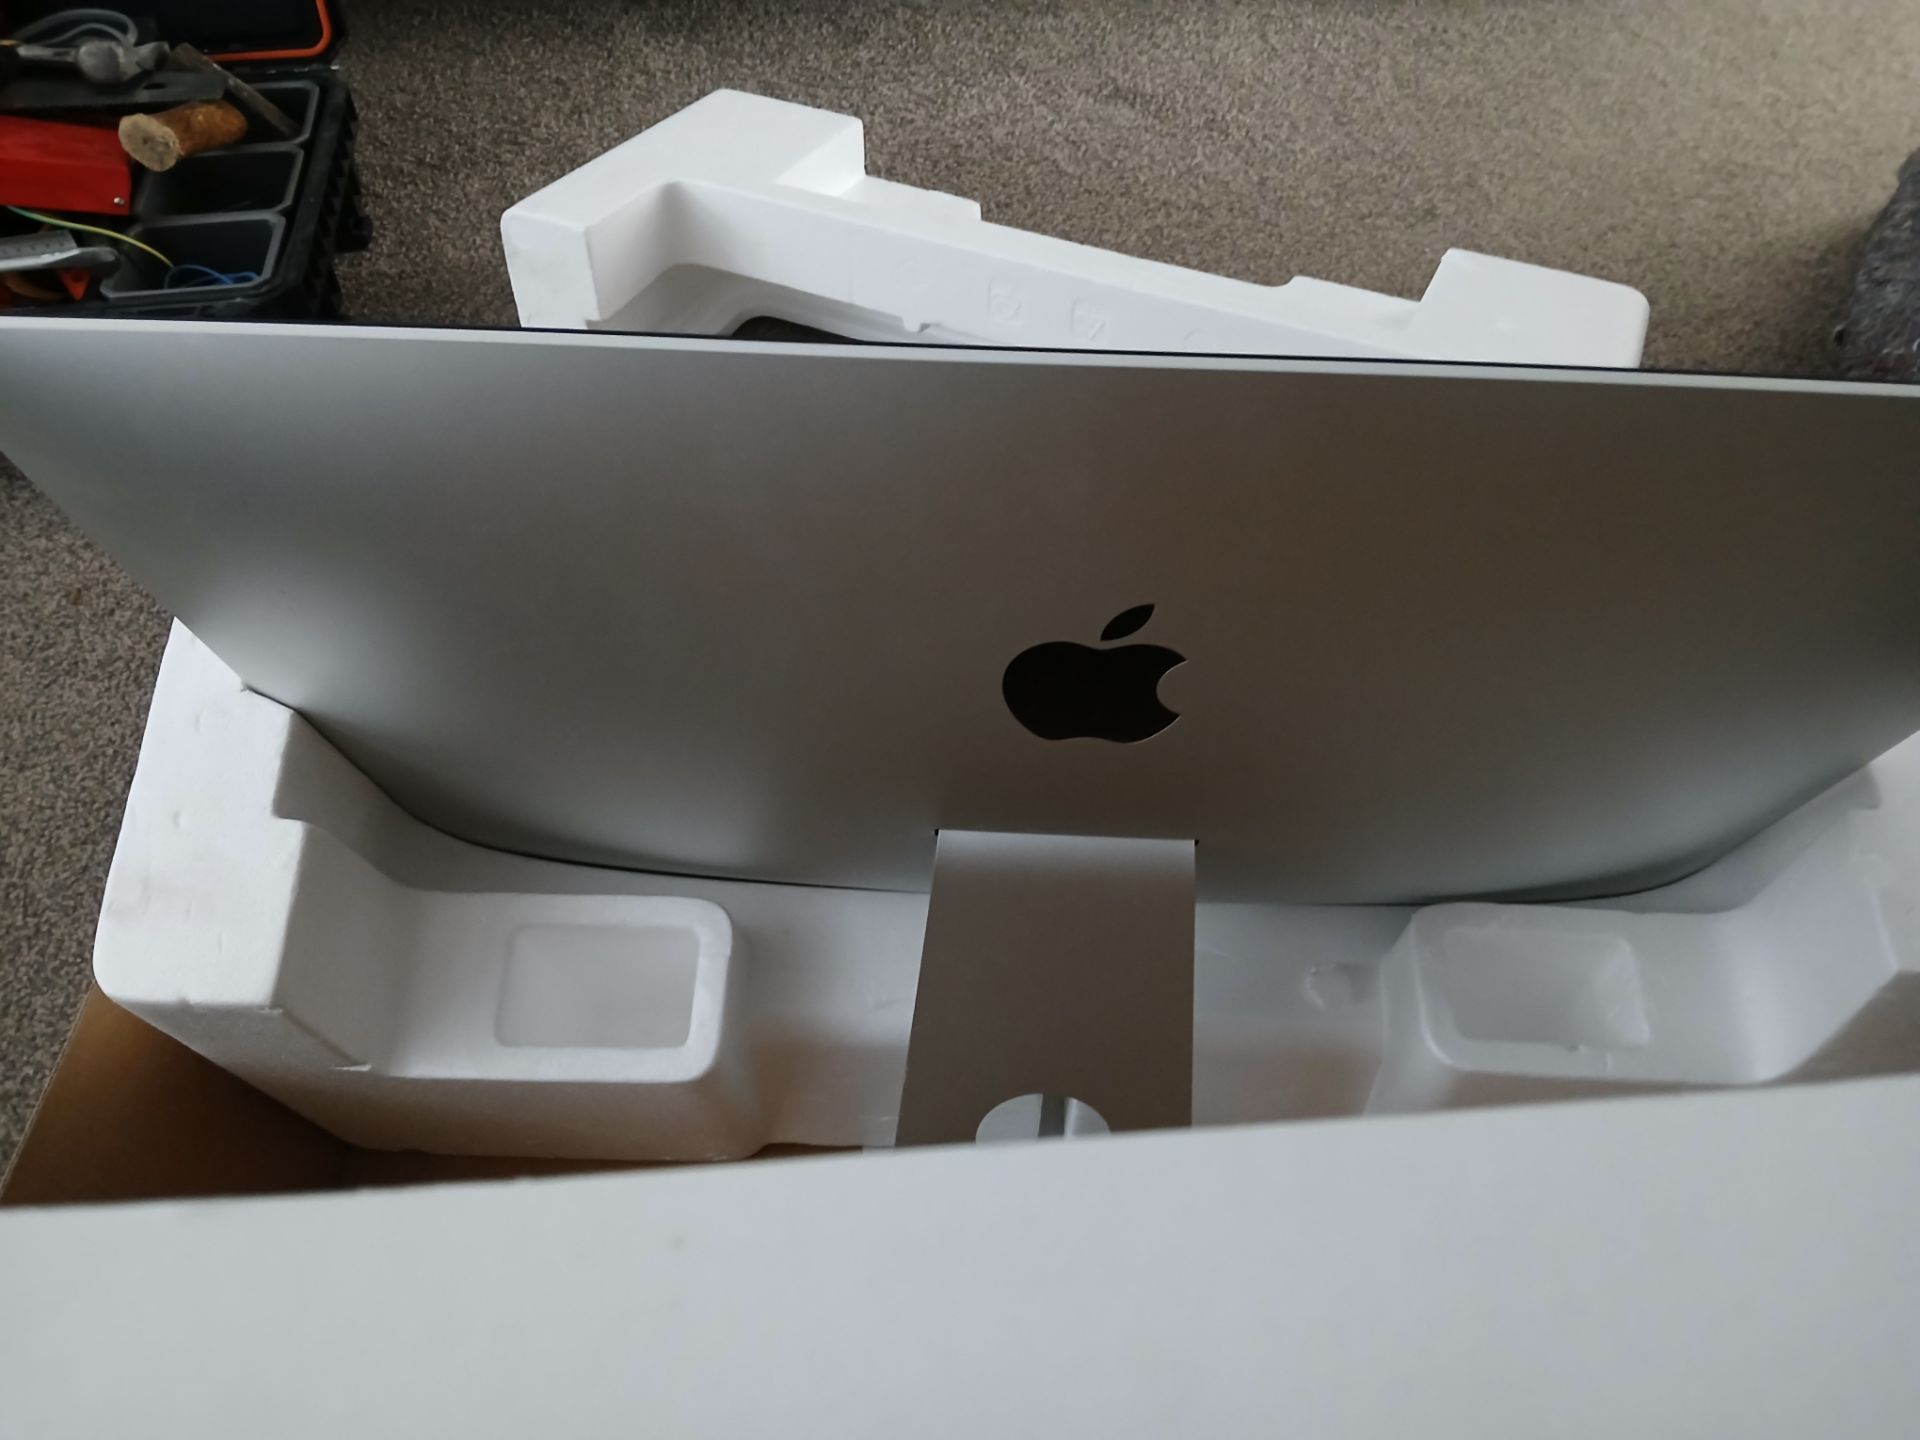 Apple iMac (Retina 5K, 27”, 2019), Serial Number DGK2HE9JV3Y (iMac only, no mouse, keyboard, or - Bild 13 aus 14